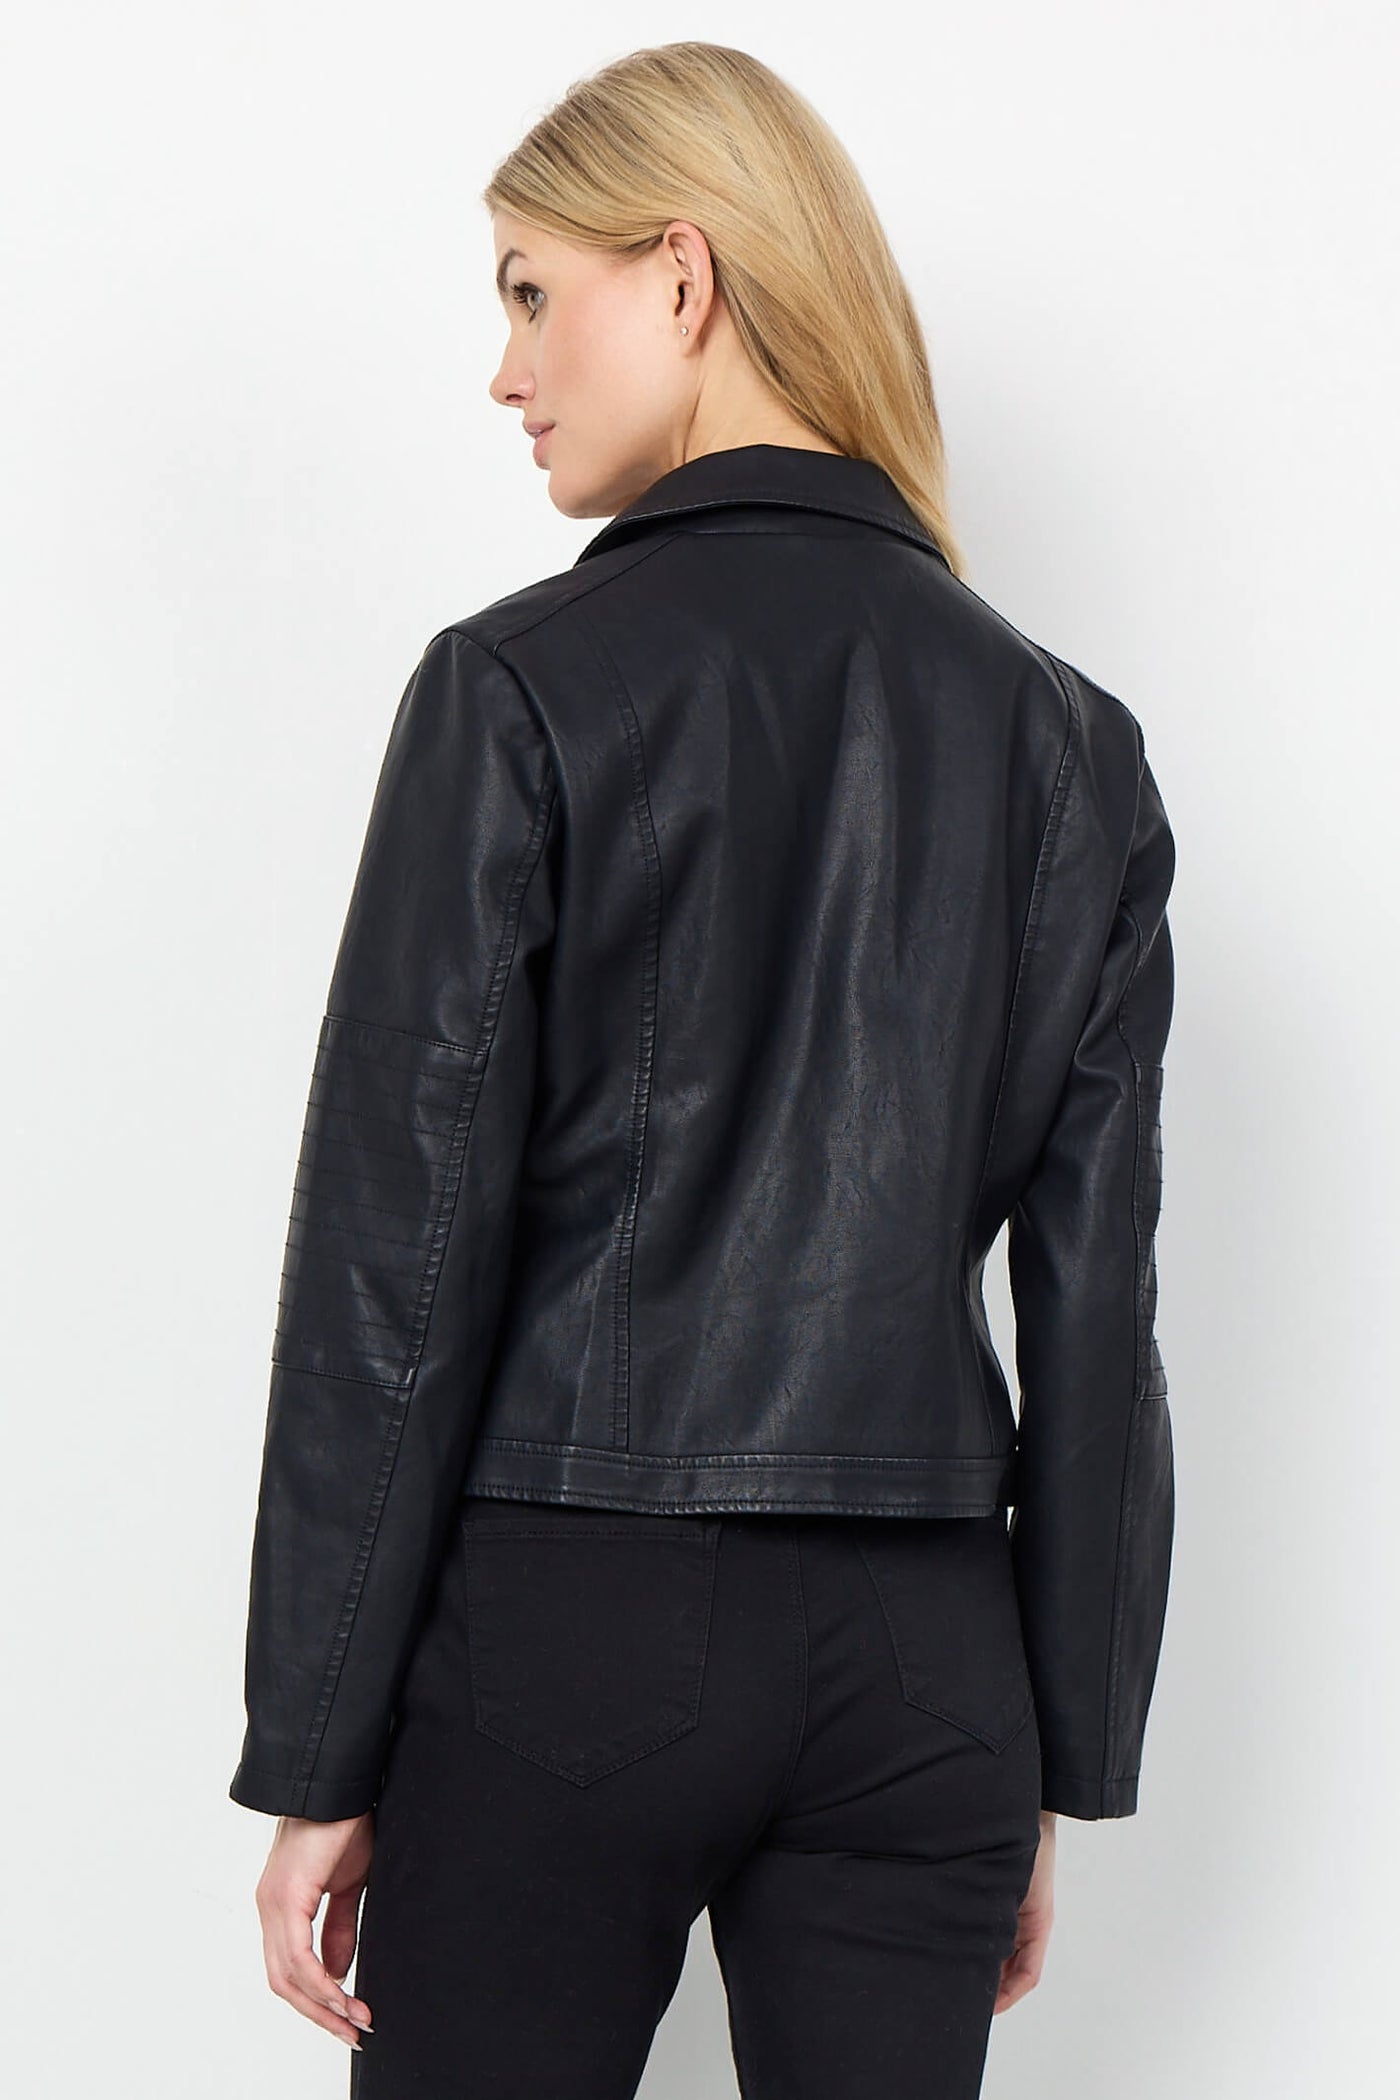 Soyaconcept 40220-20 SC-Gunilla 9999 Black Faux Leather Biker Style Jacket - Rouge Boutique